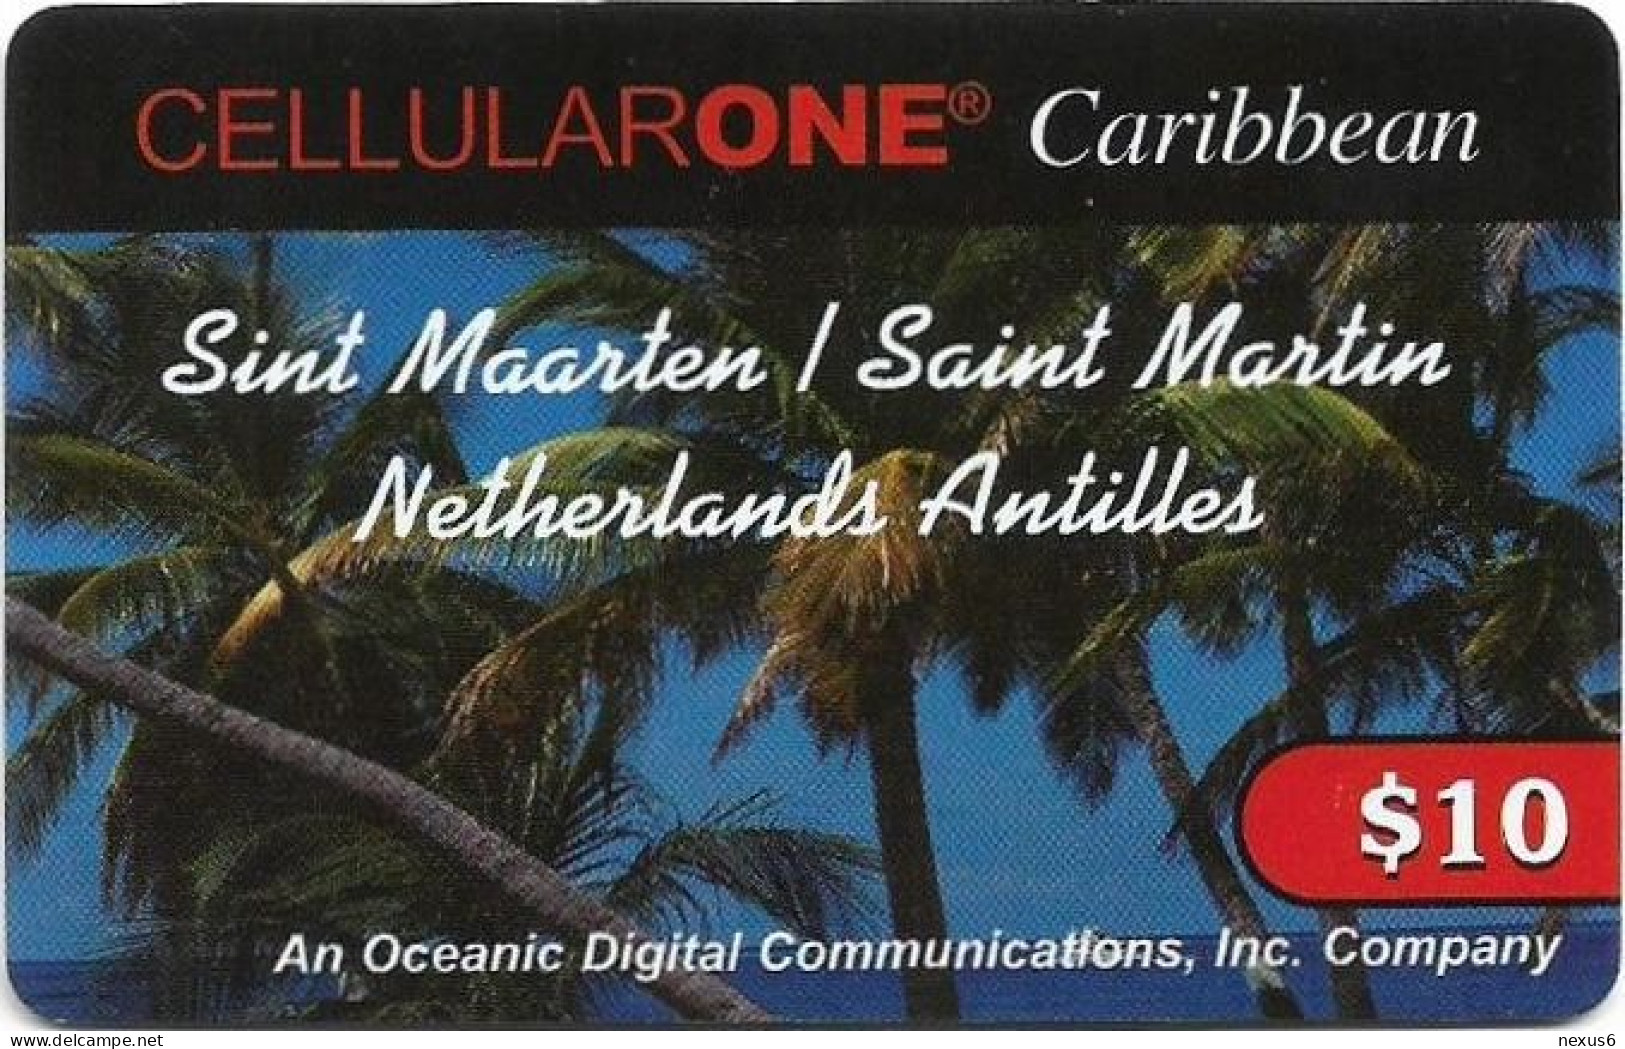 St. Maarten (Antilles Netherlands) - Cellular One Caribbean - Palm Trees (Type 1), Remote Mem. 10$, Used - Antilles (Netherlands)